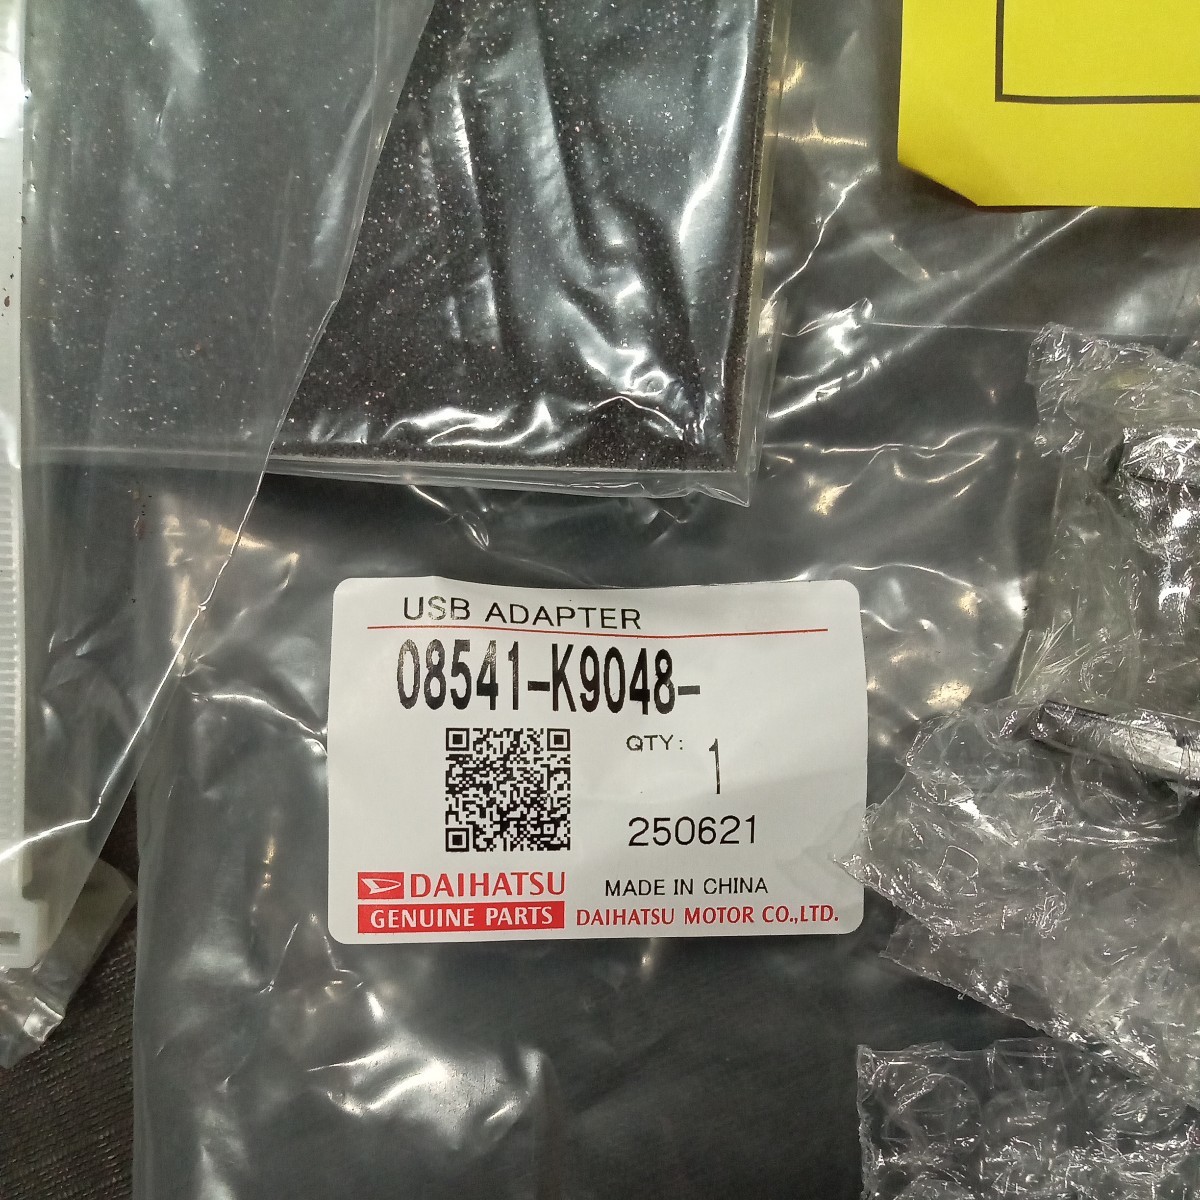 ダイハツ・USBアダプター(イルミ付き)品番08541-K9048 新品・未使用品の画像3